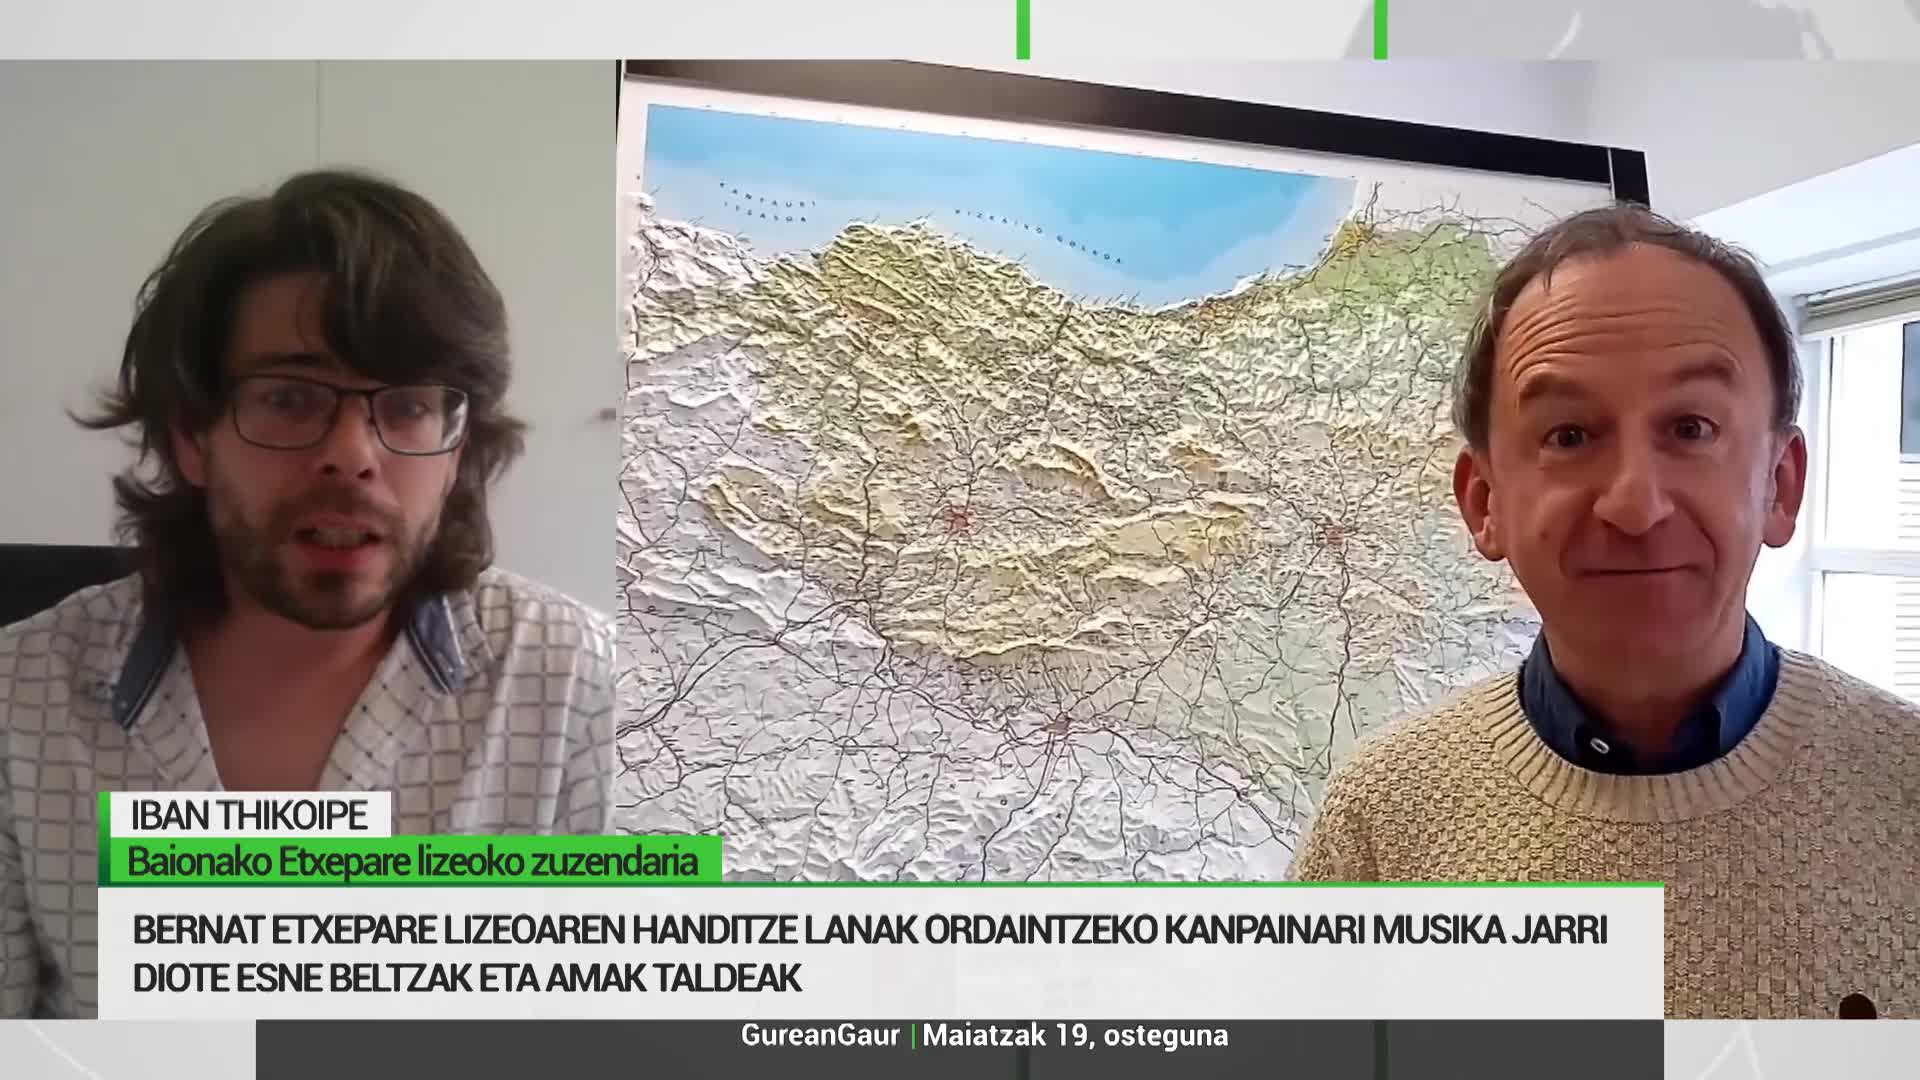 Iban Thikoipe: 'Mapa bat baino gehiago da, gure eskola proiektua islatzen duelako'